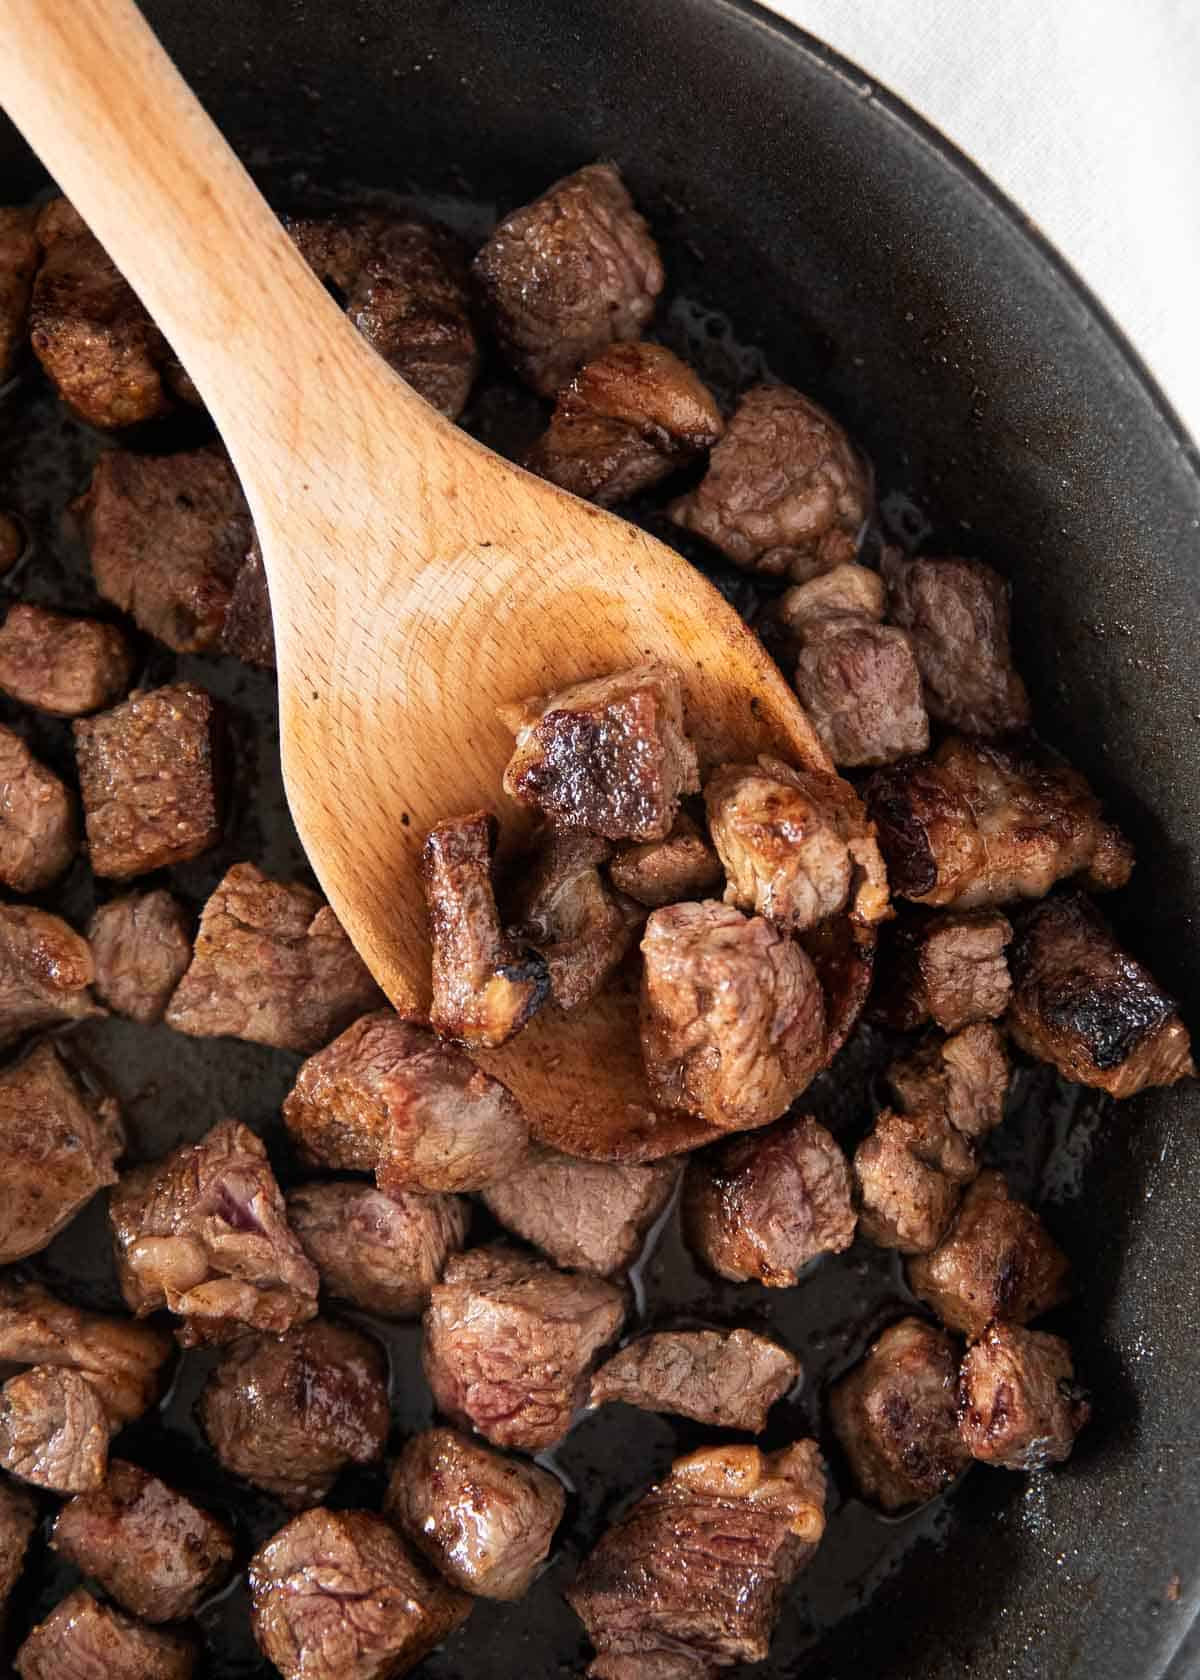 https://www.iheartnaptime.net/wp-content/uploads/2021/01/steak-bites-2.jpg